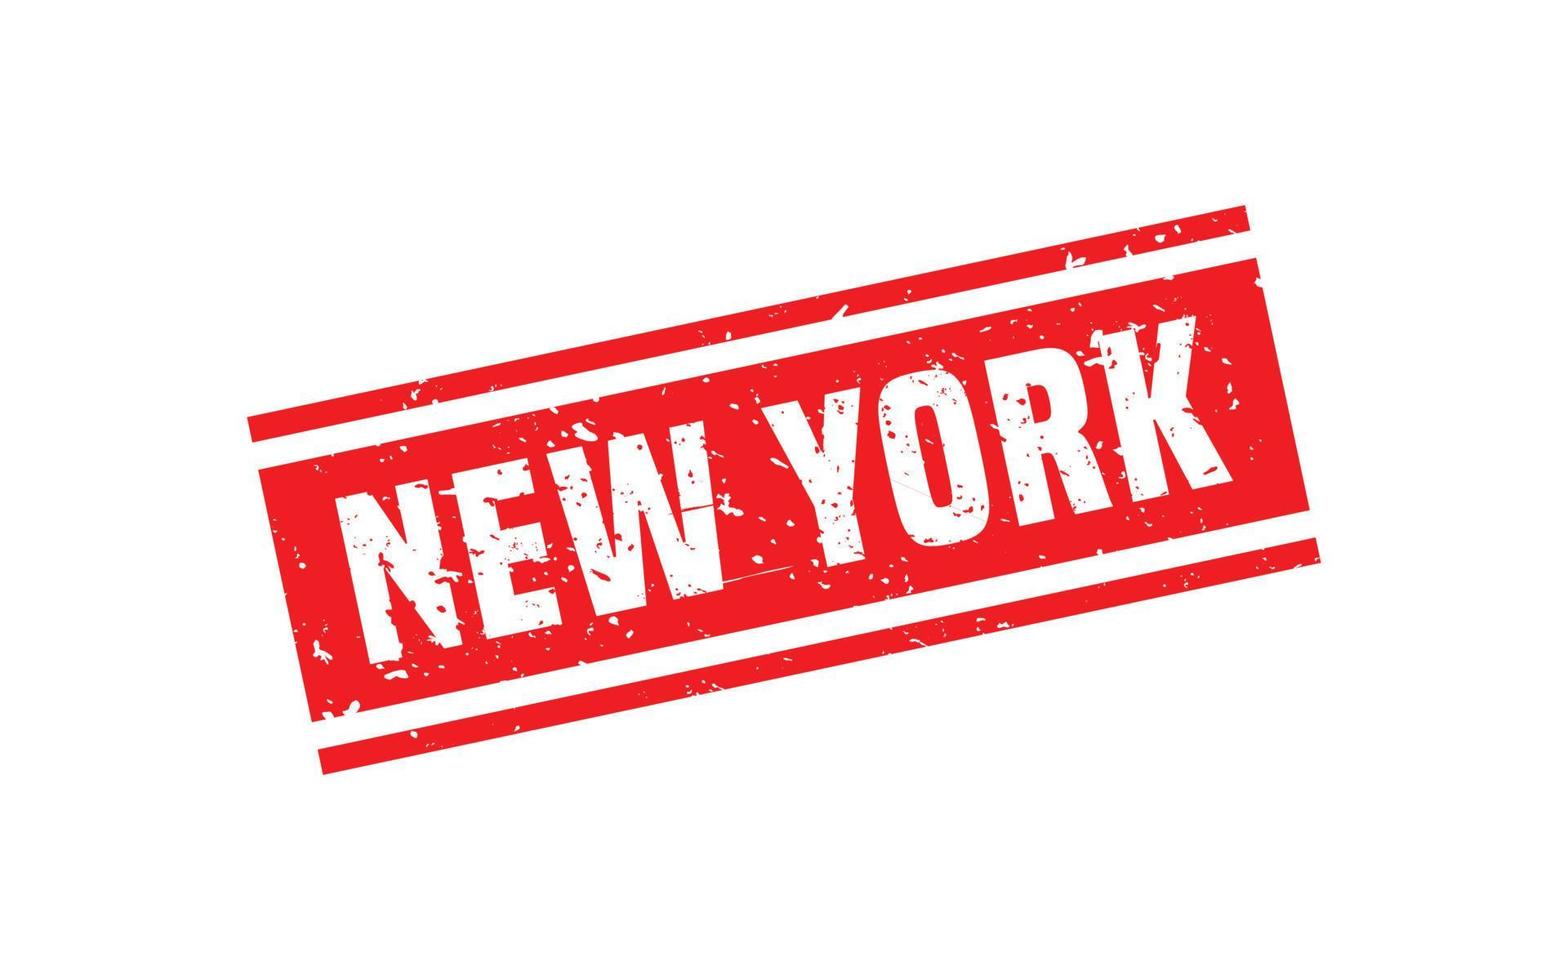 New York Stempel Textur mit Grunge-Stil auf weißem Hintergrund vektor